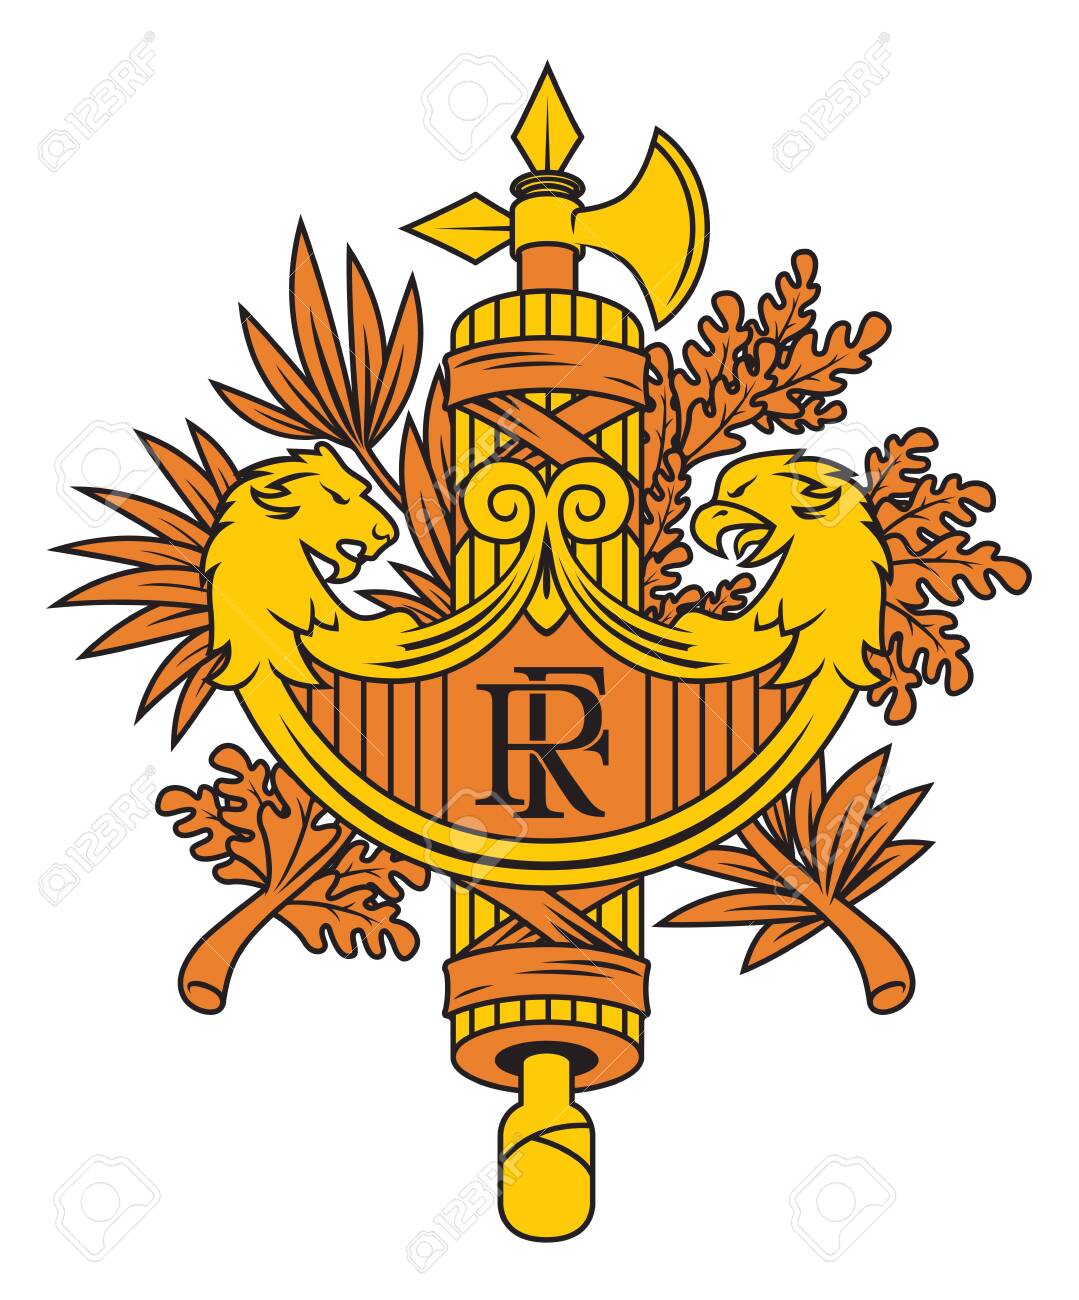 124121876-symbol-of-france-national-emblem-.jpg